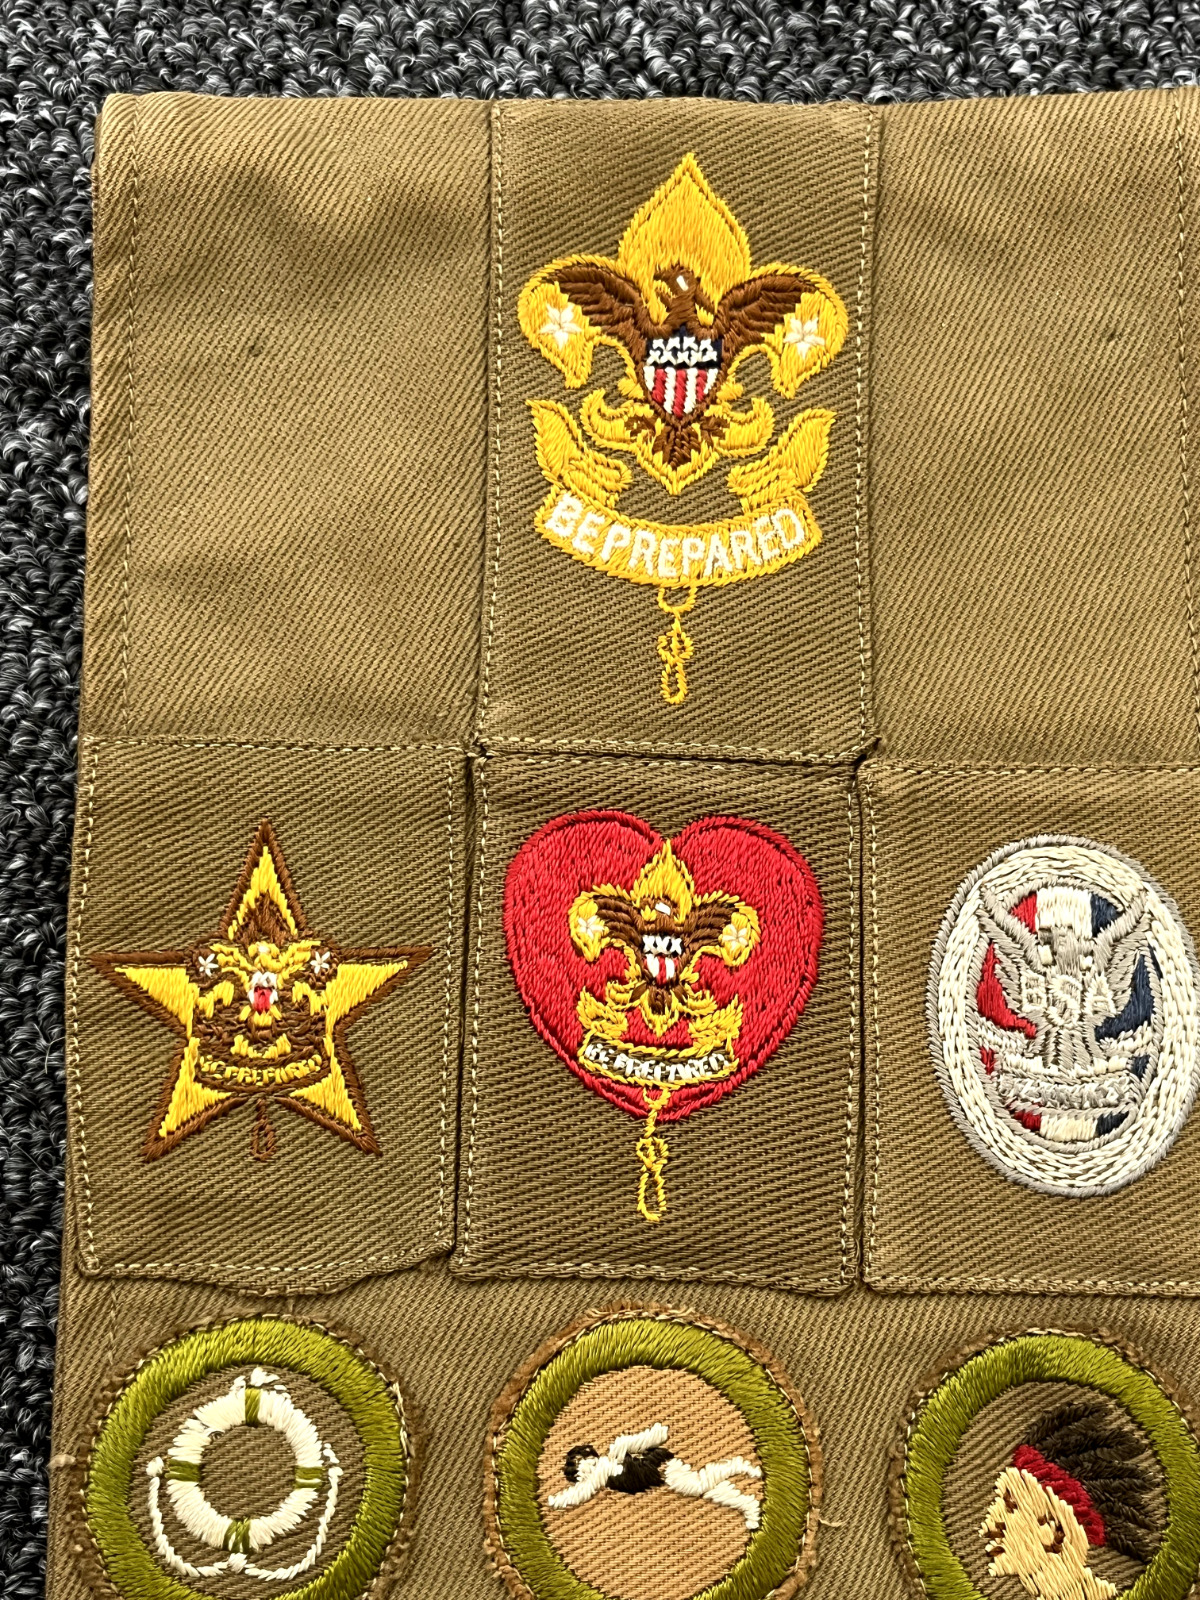 1920's/30's Boy Scout Sash 24 Merit Badges RARE Eagle Scout Patch